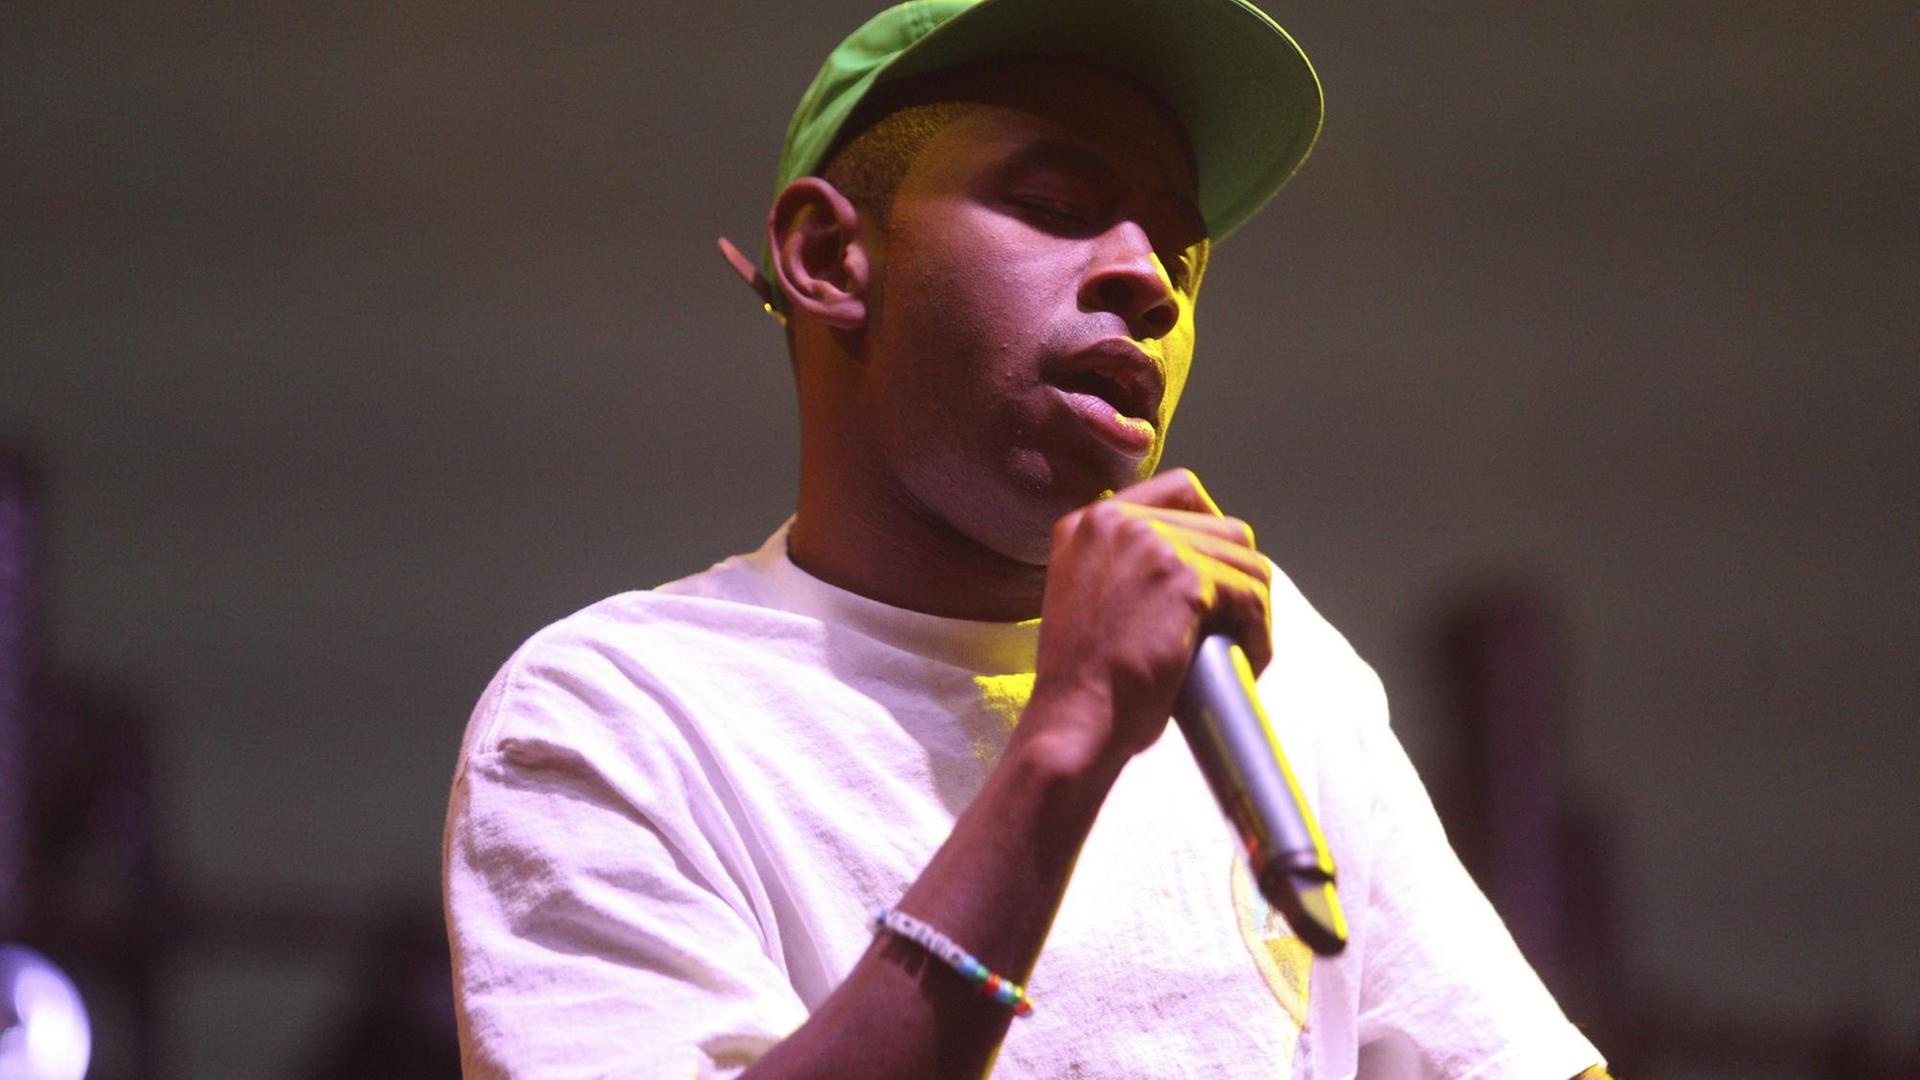 Der Rapper Tyler, The Creator während eines Konzertes